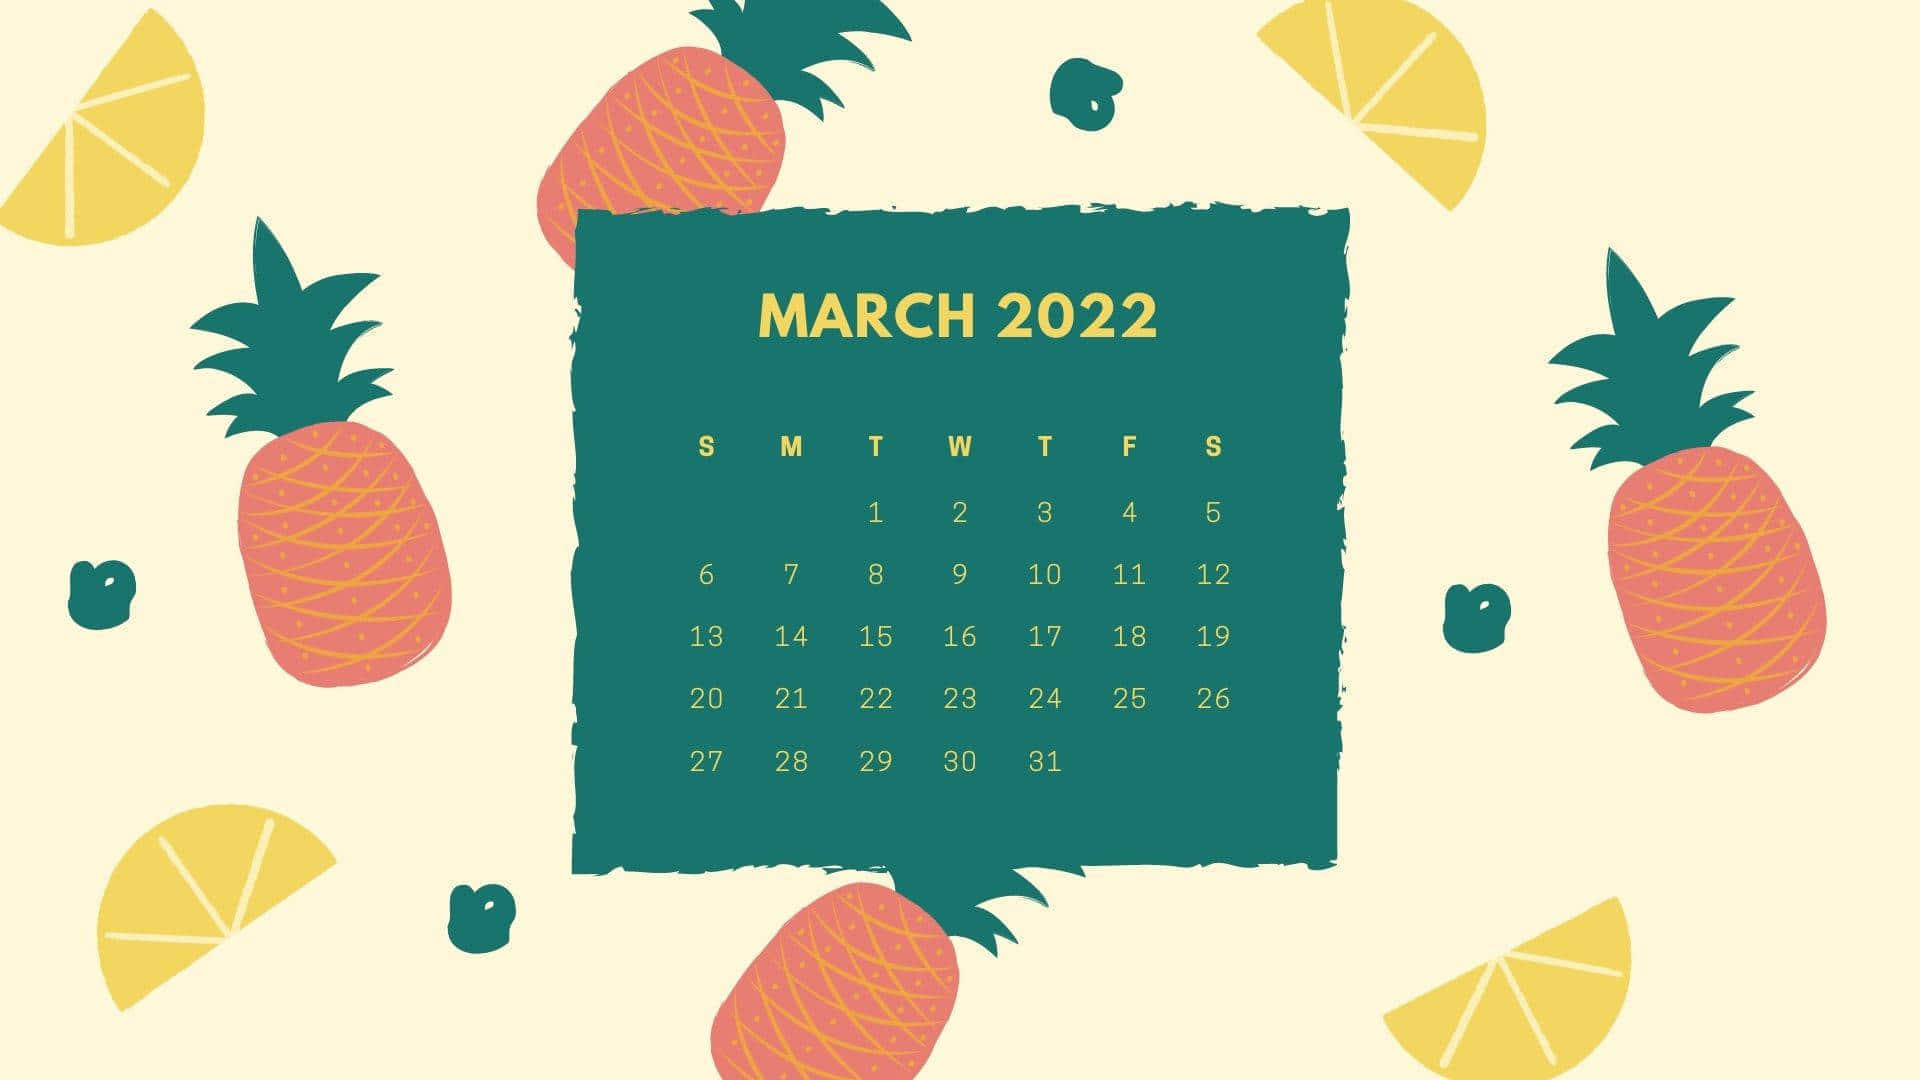 March2022 Fruit Themed Calendar Wallpaper